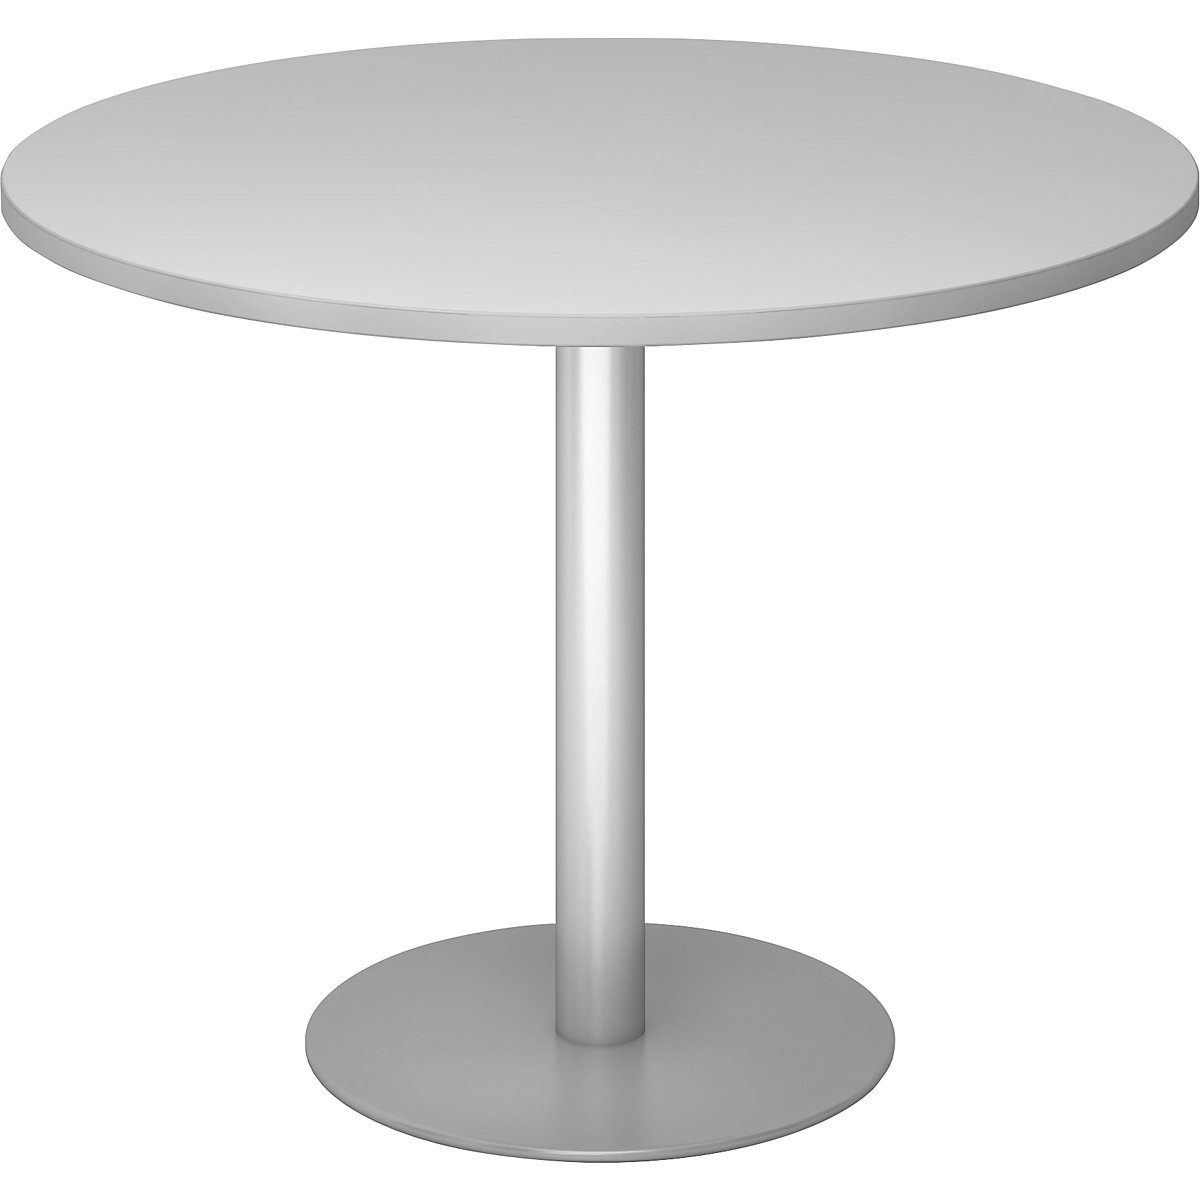 Jednací stůl, Ø 1000 mm, výška 755 mm, stříbrný podstavec, deska světle šedá